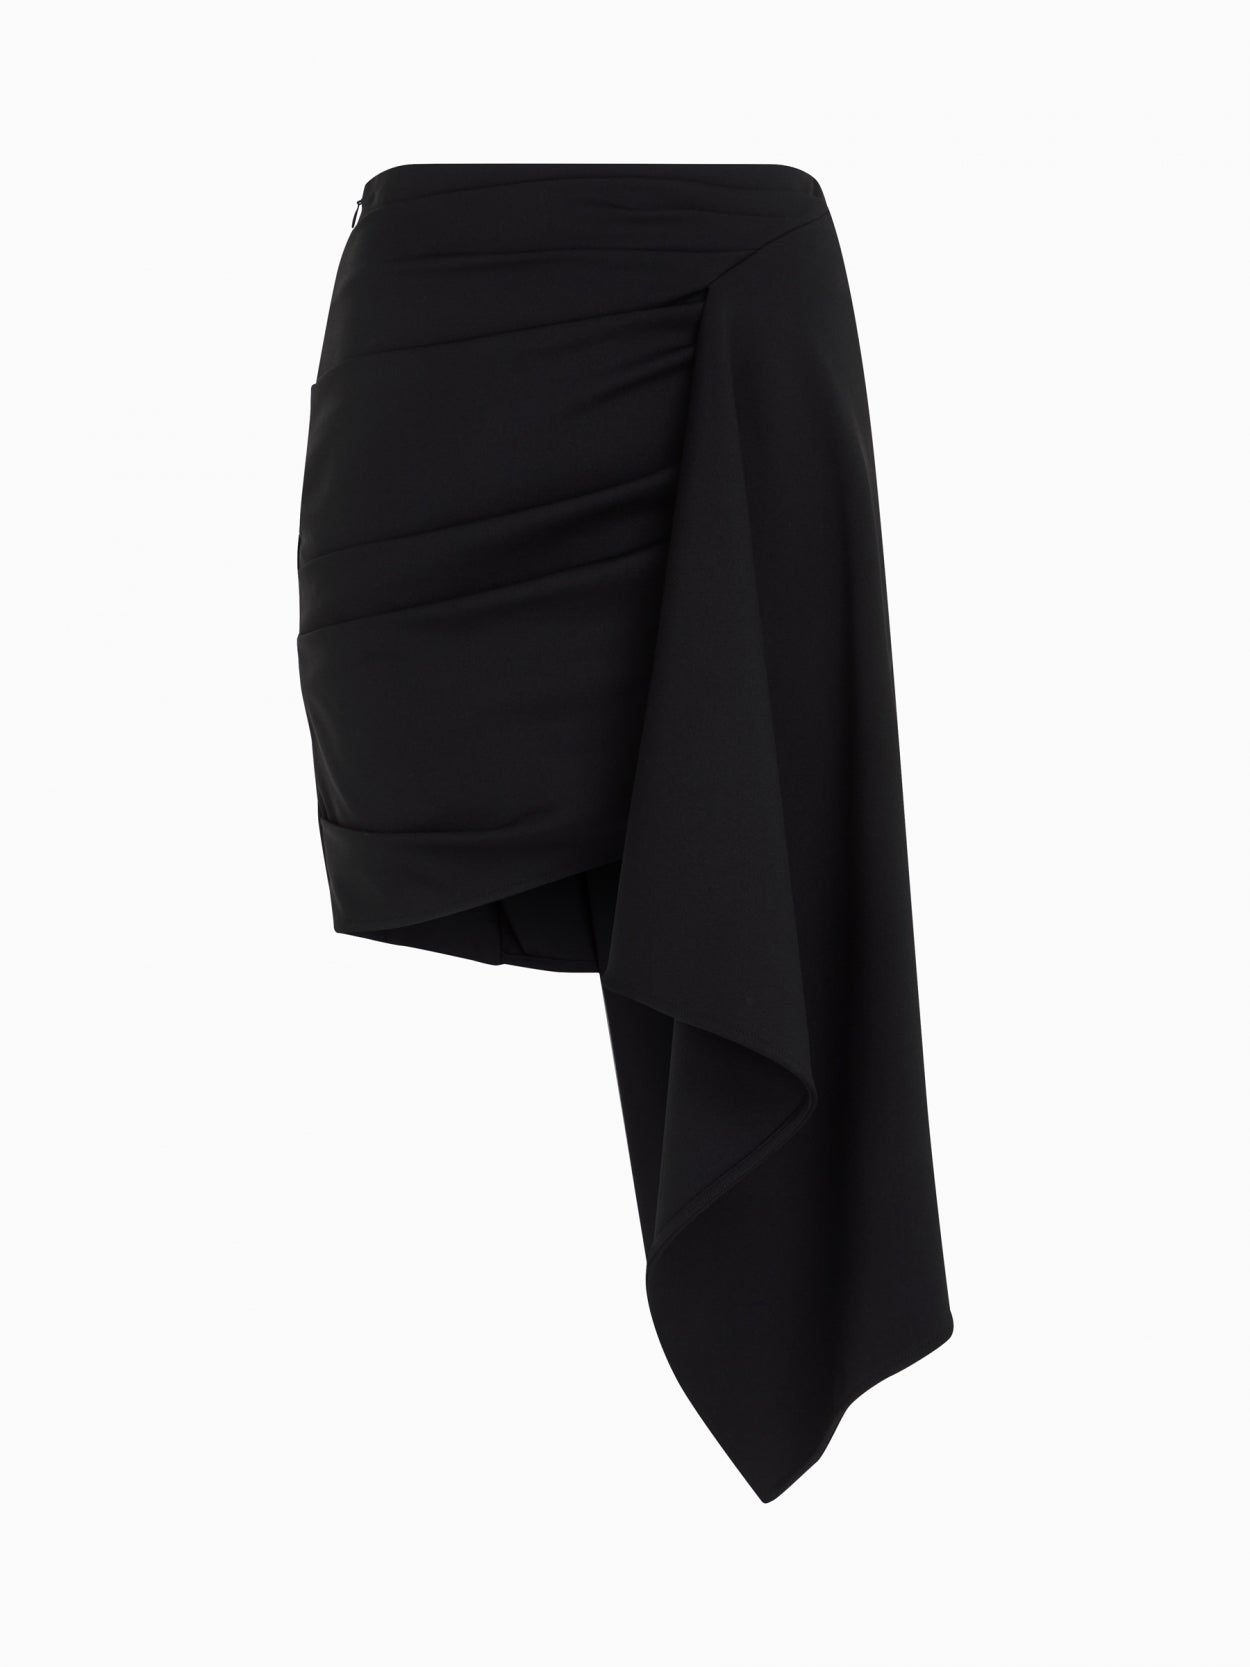 front packshot of a black draped skirt